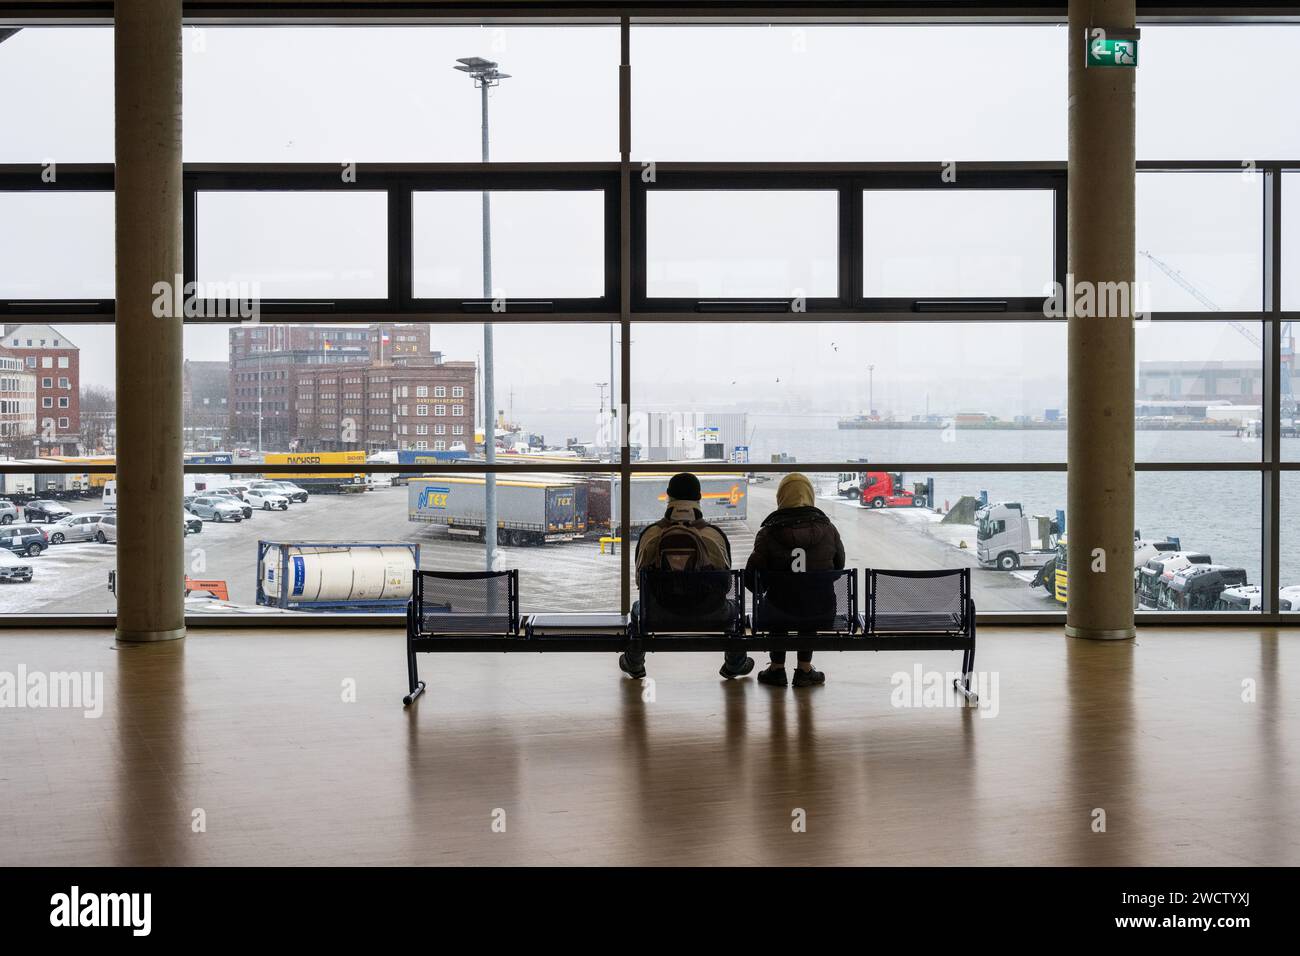 Ein Mann und eine Frau auf einer Sitzbank im Terminalgebäude der Stena Line auf das Panorama des Kieler Hafens blickend Stock Photo